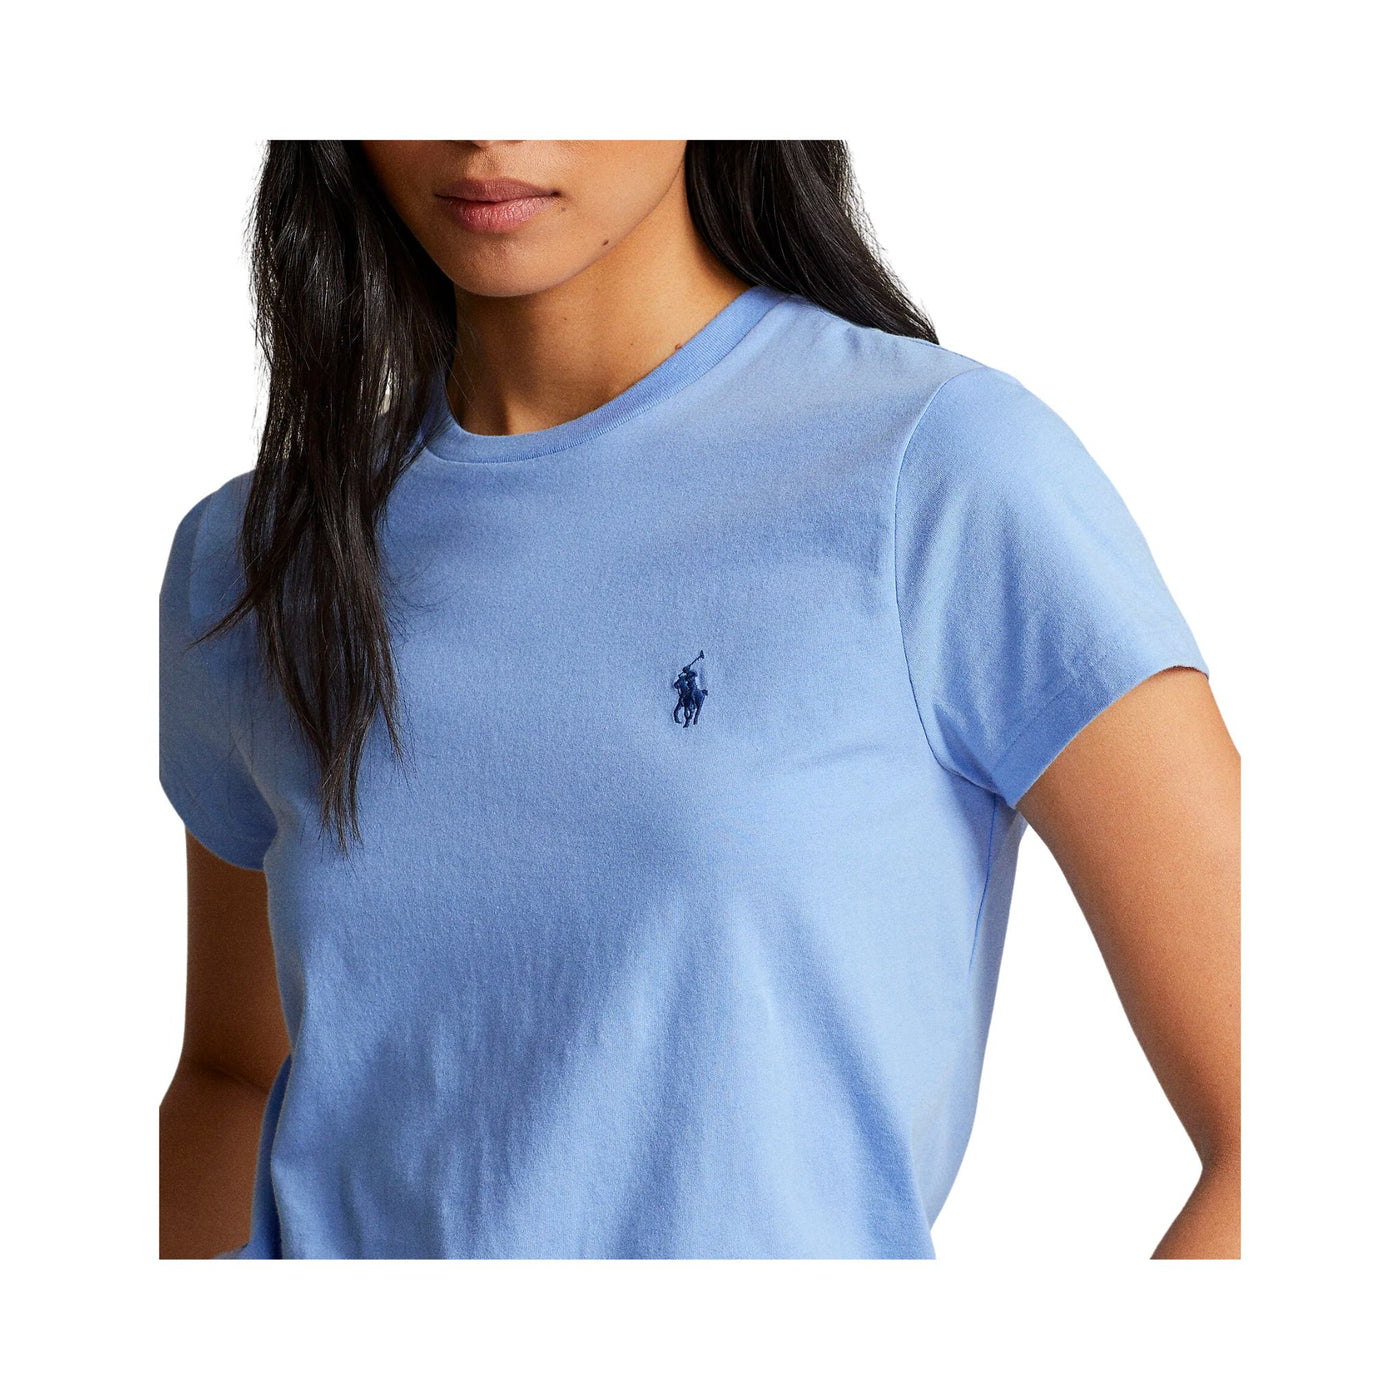 Women's light blue cotton t-shirt 